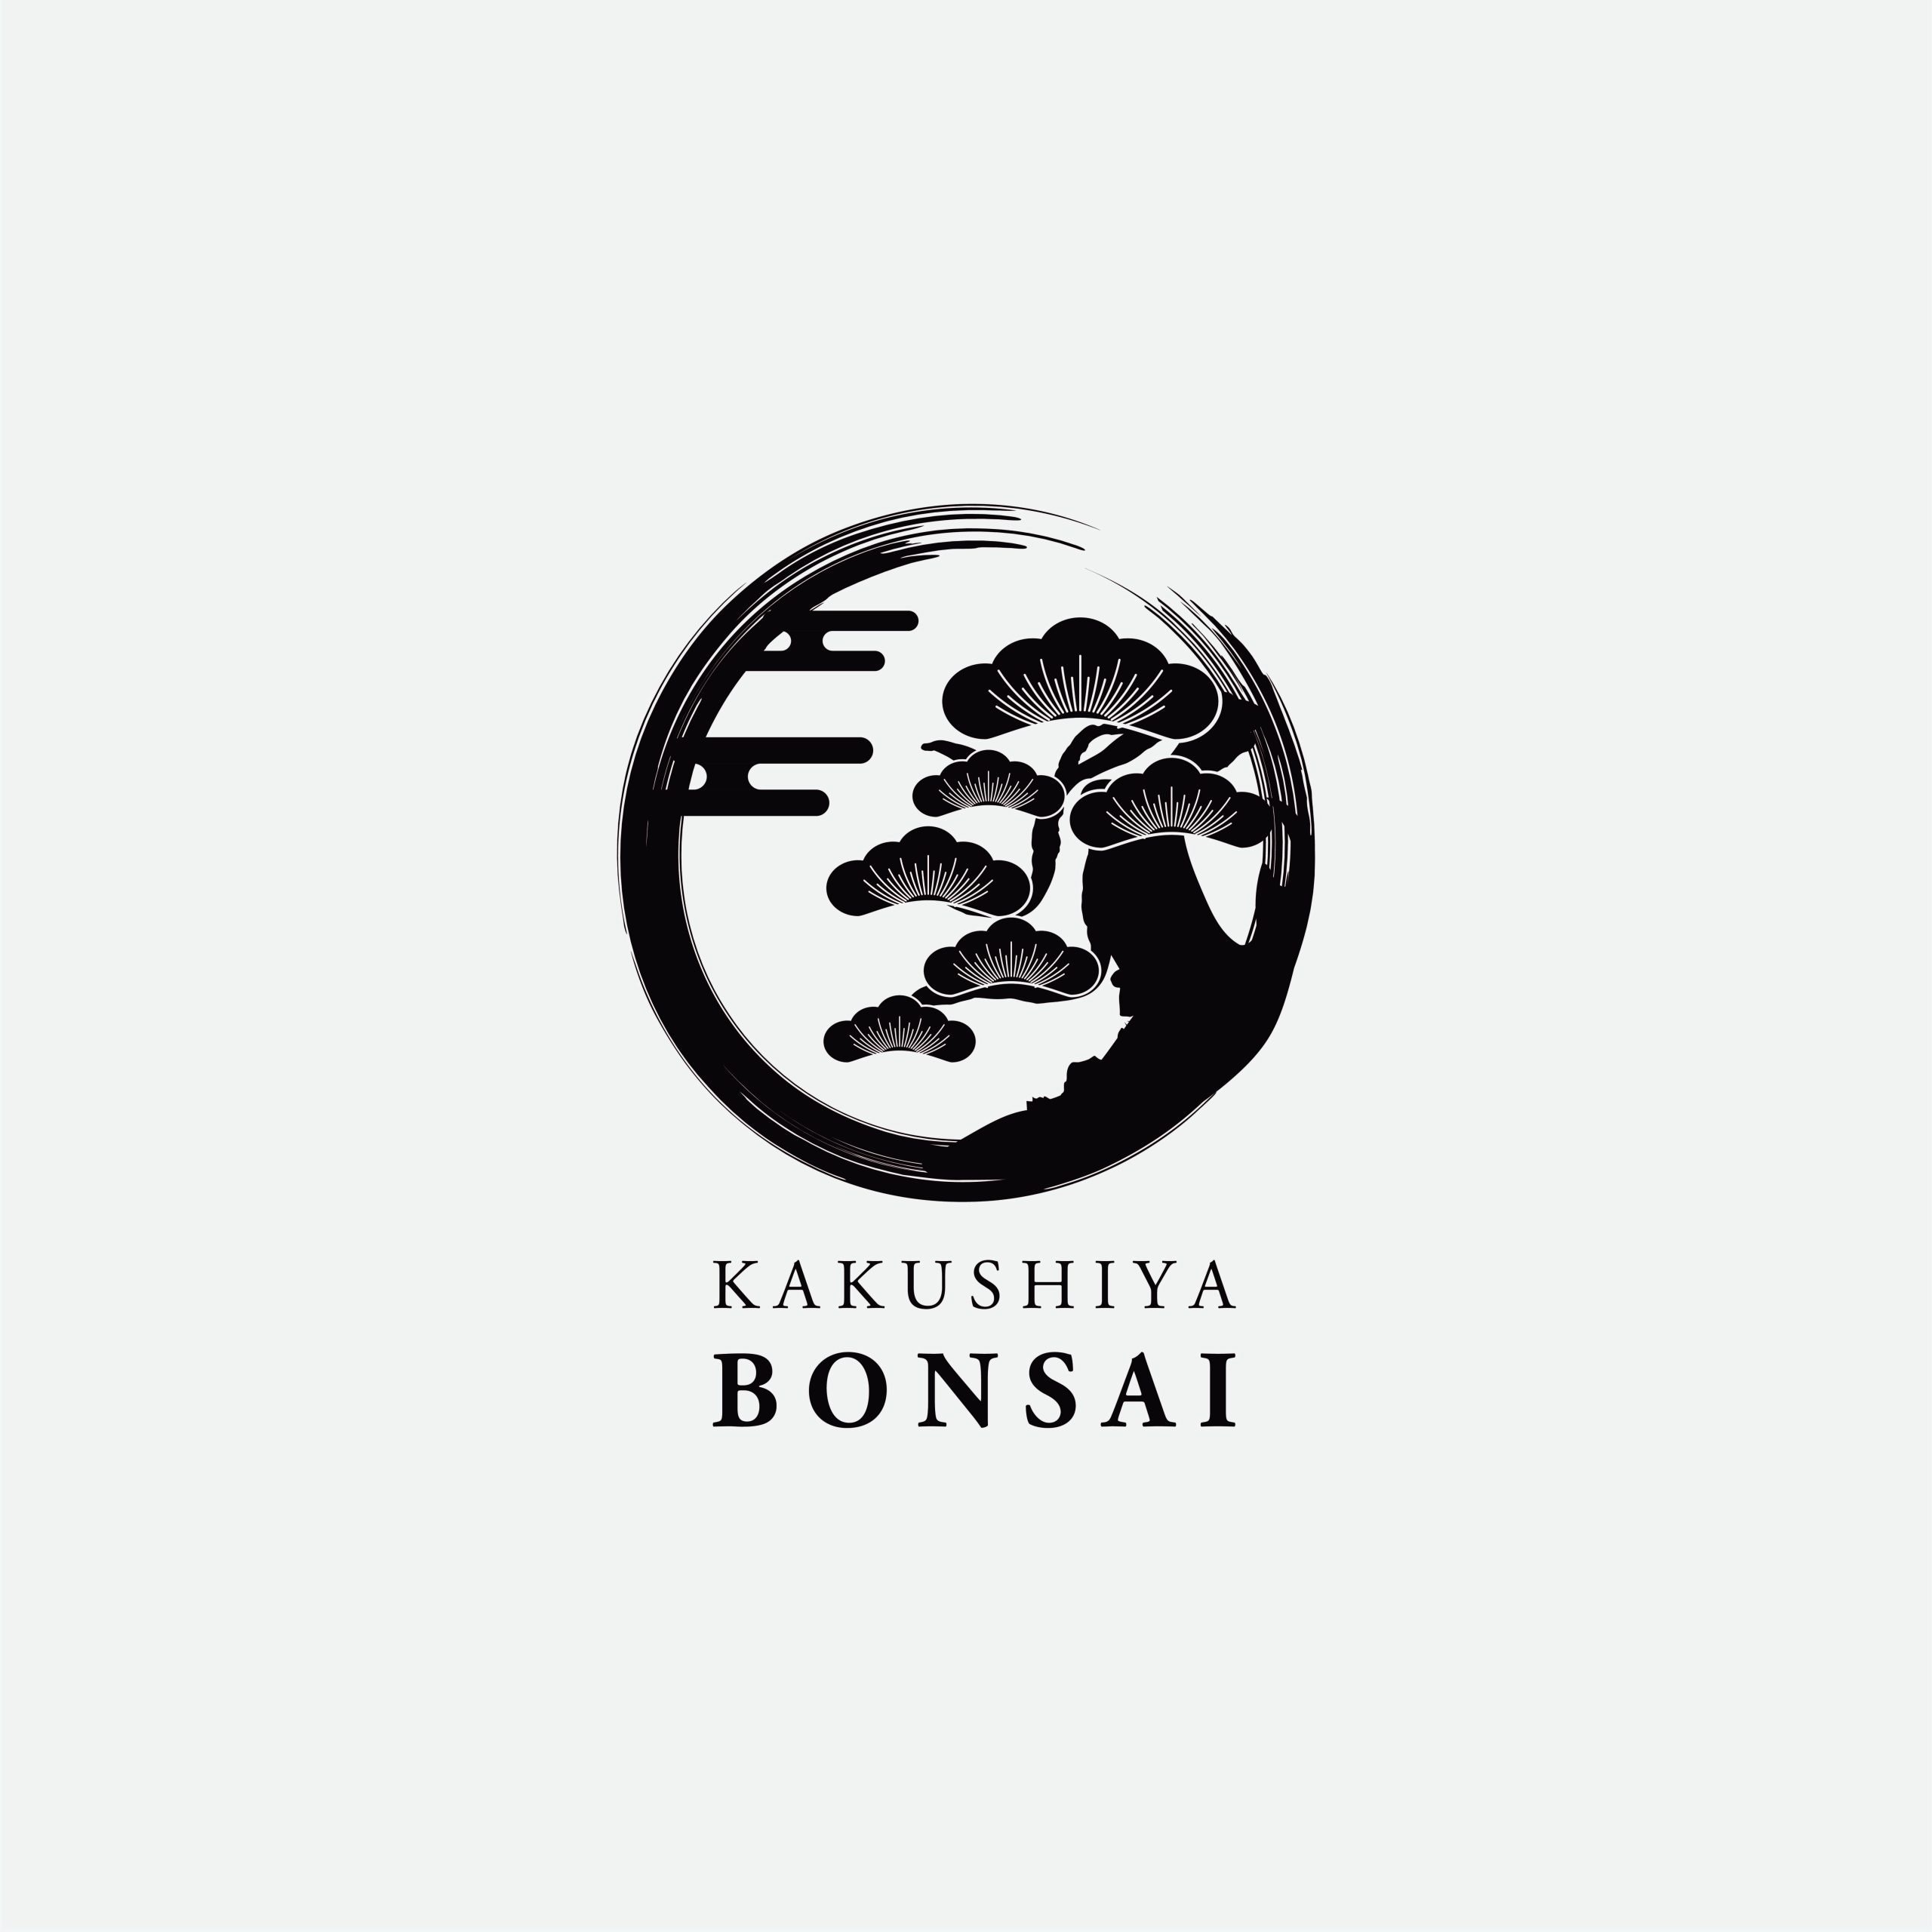 画像未登録時の代替え画像のKAKUSHIYA BONSAIのロゴバナー